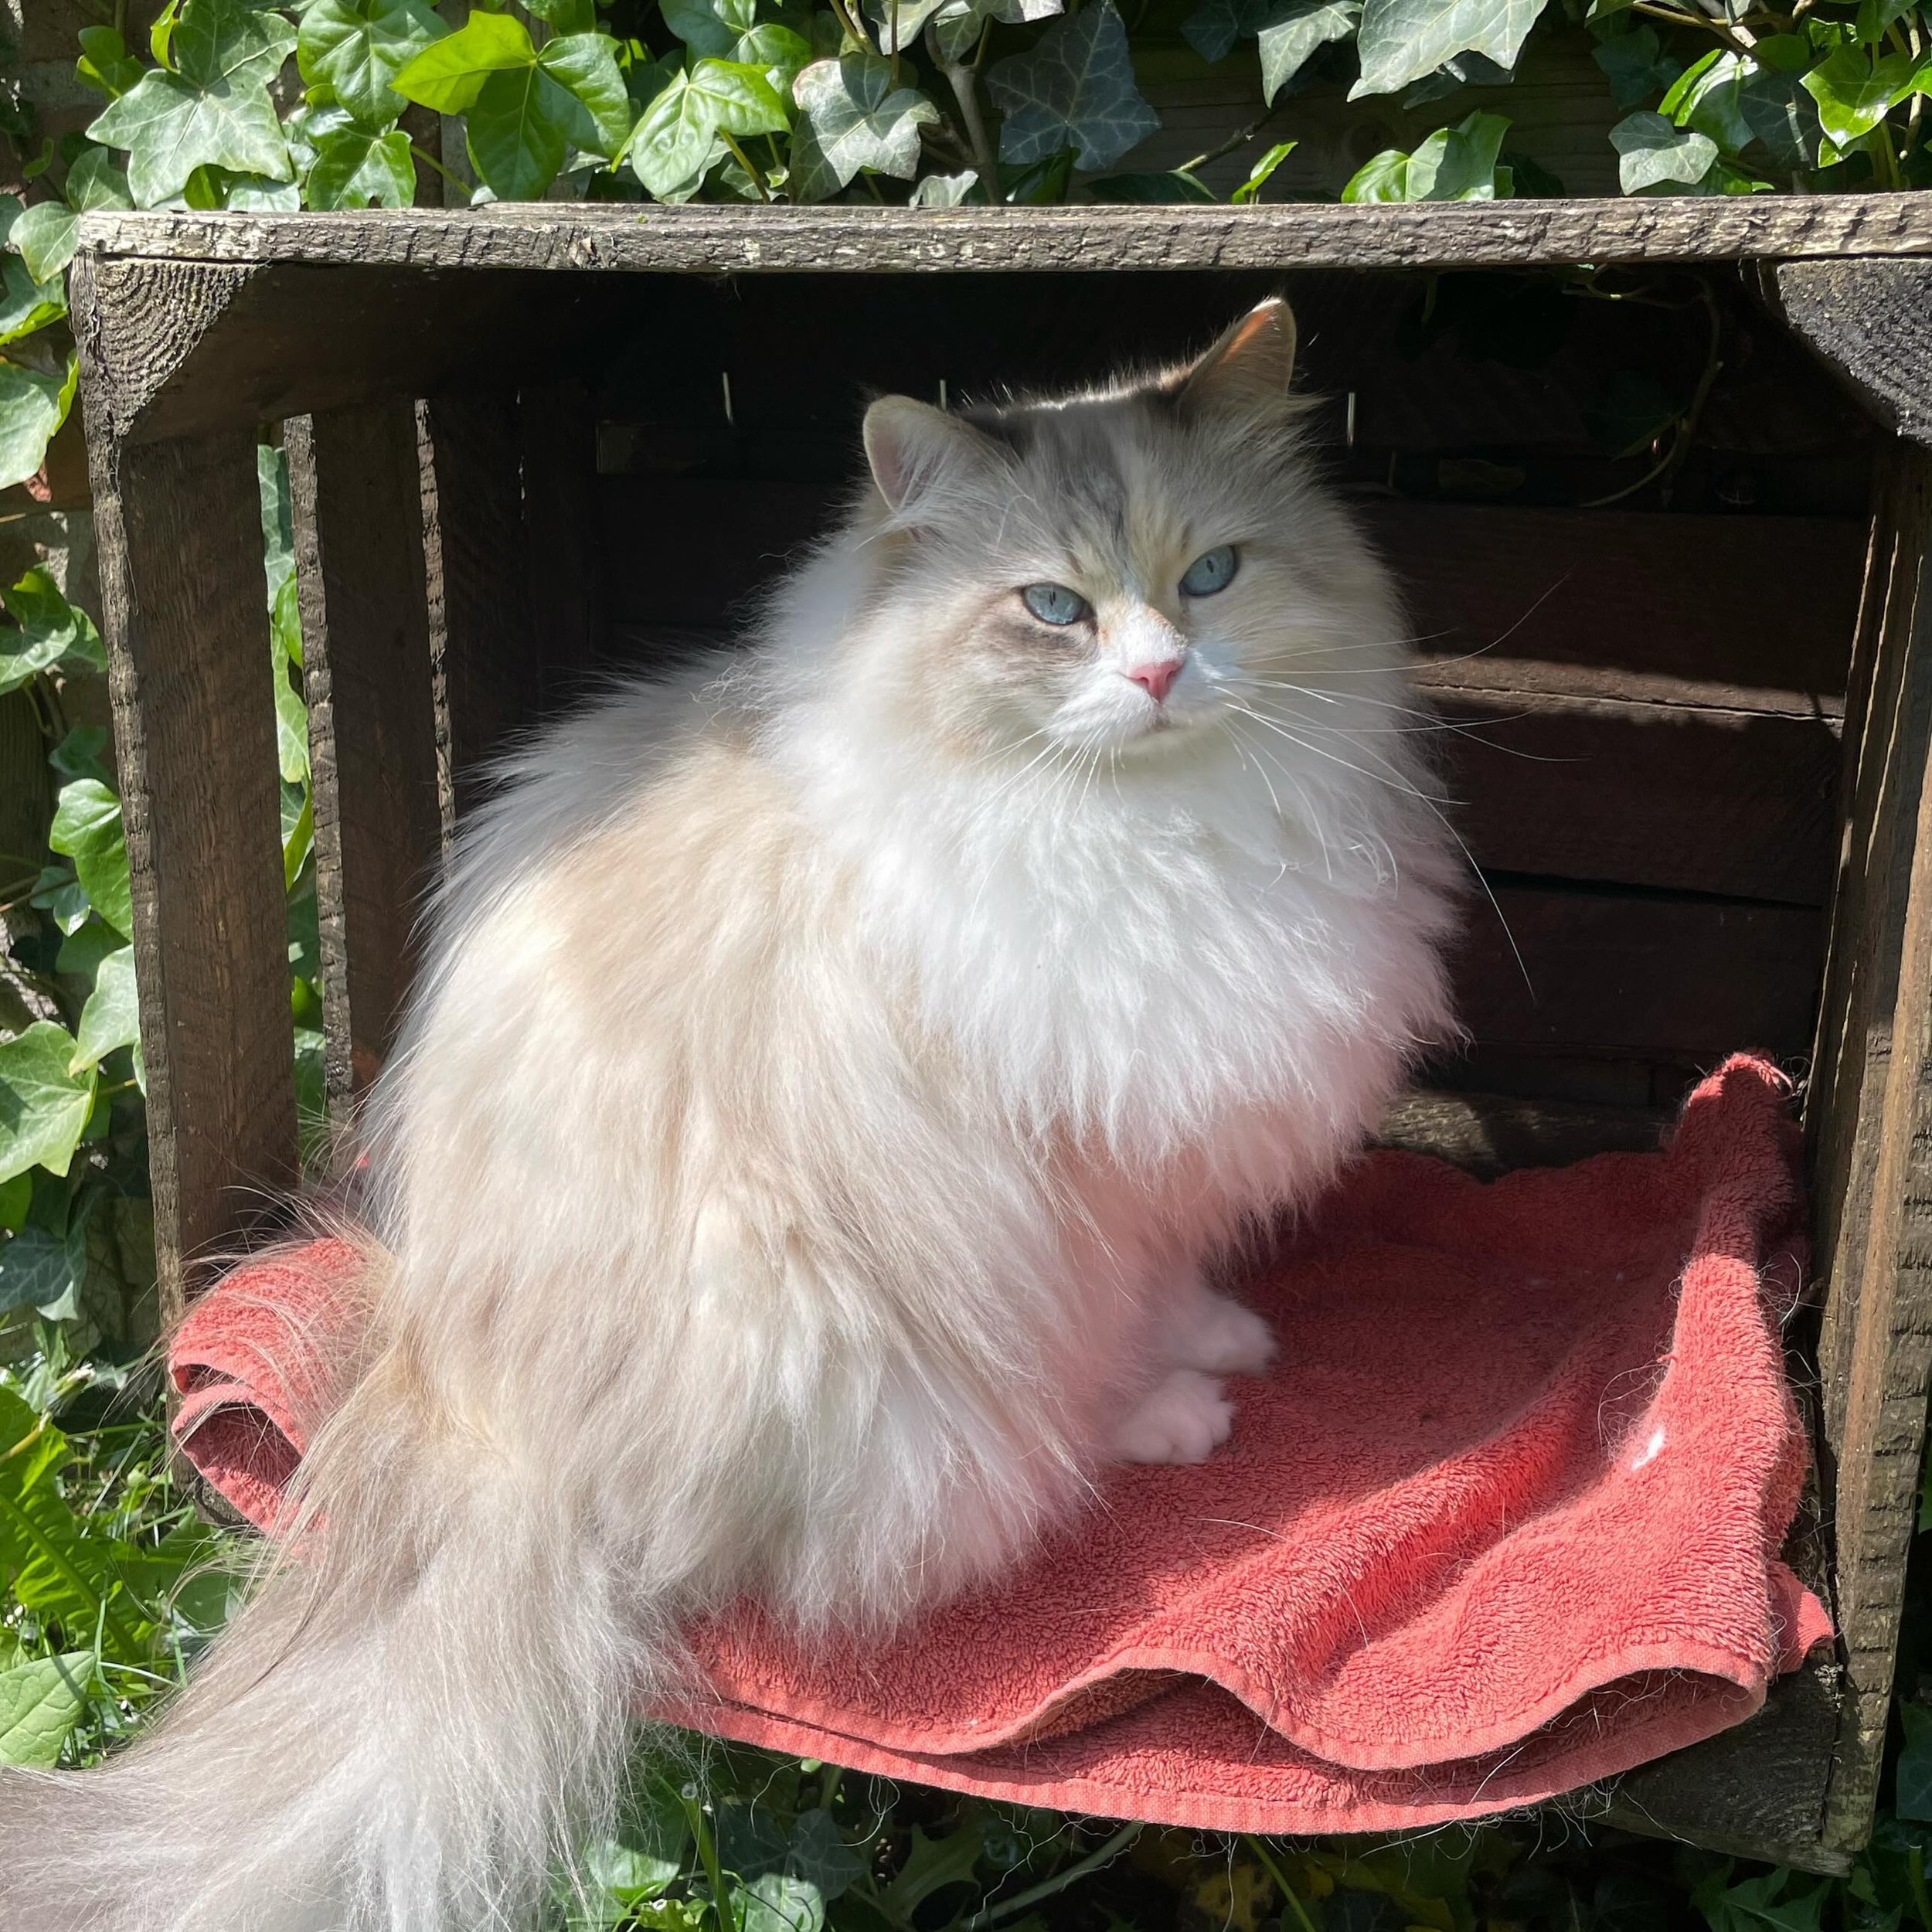 Wat een heerlijk weer he?☀️

Luna heeft een fijn zitplekje in de tuin, dus daar zit ze graag🥰

Het mooie zomerweer komt er weer aan, maar houd de vacht van je kat goed in de gaten! Veel katten zijn nog bezig met de vachtwissel en dat kan zomaar klit